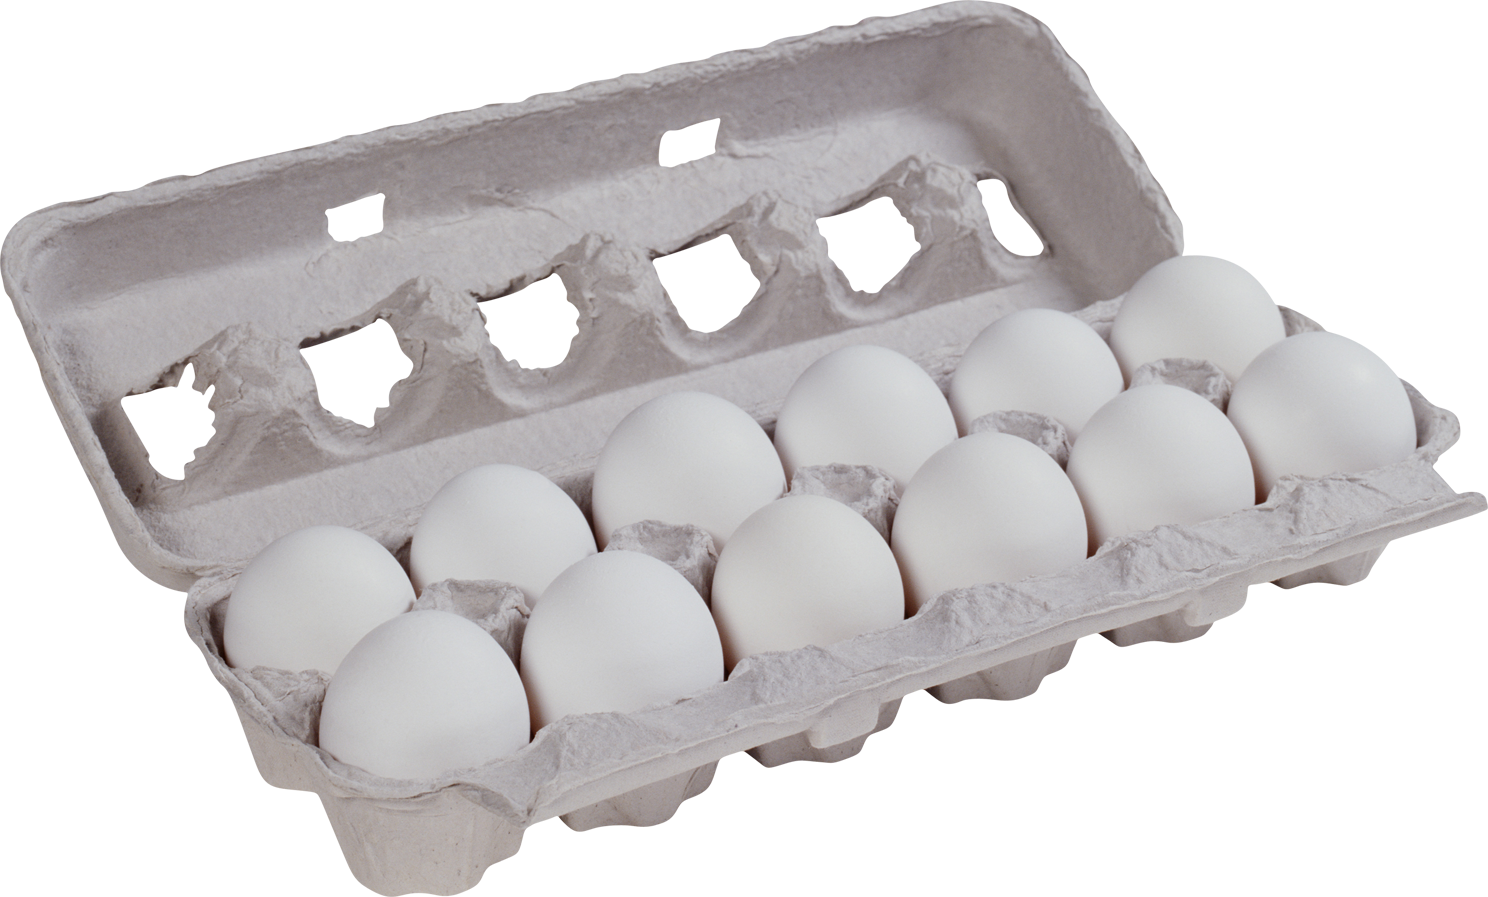 Сколько яиц в лотке. Десяток яиц. Упаковка для яиц. Девяток яиц. Упаковка яиц 10 штук.